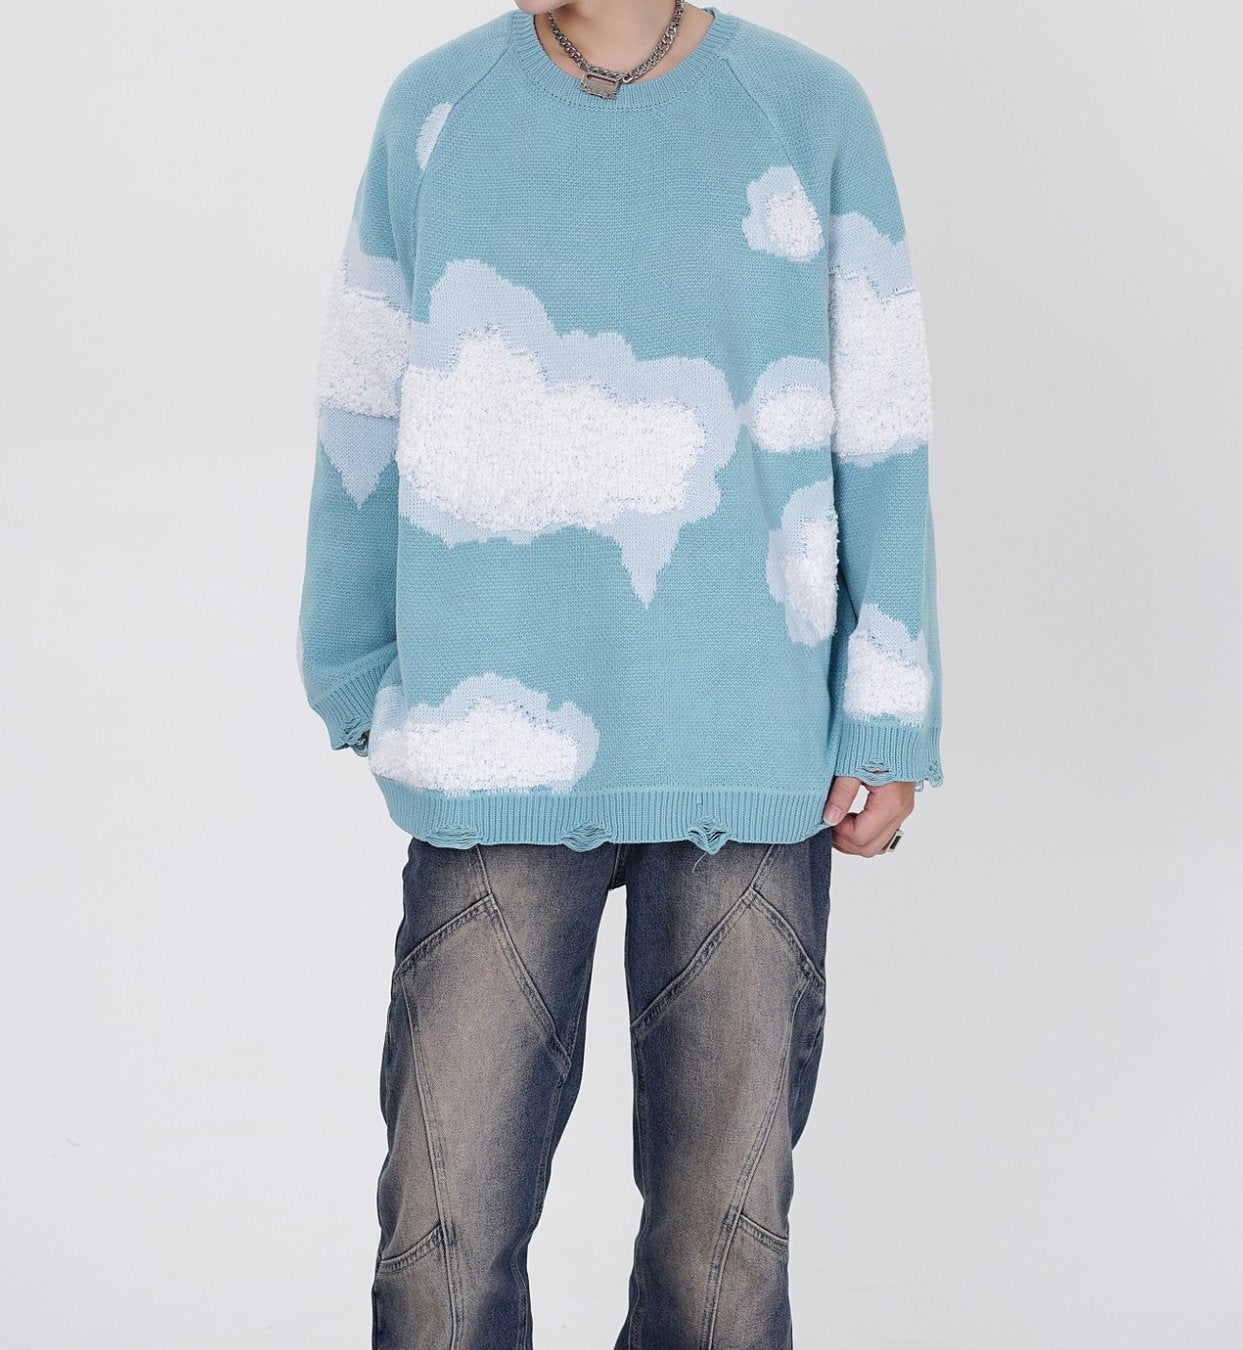 Unisex 3D Cloud Knit Sweater